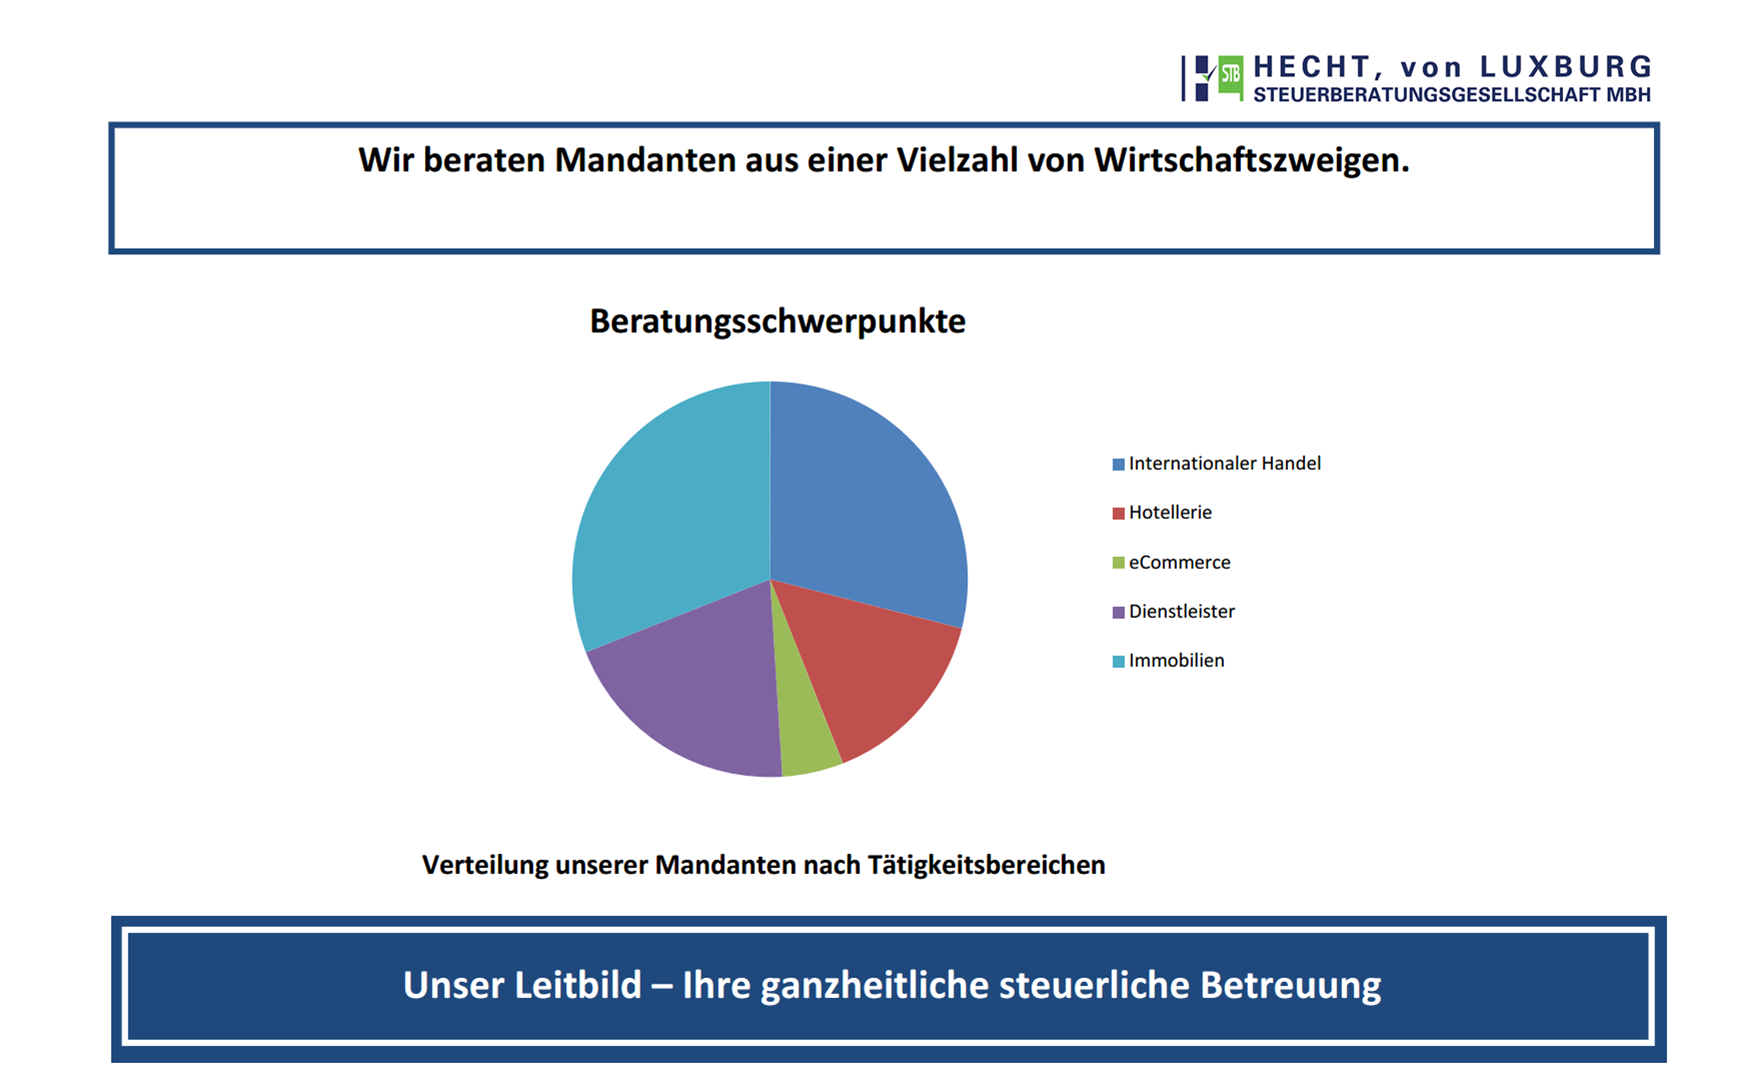 HECHT, von LUXBURG Steuerberatungsgesellschaft mbH - Presentation DE